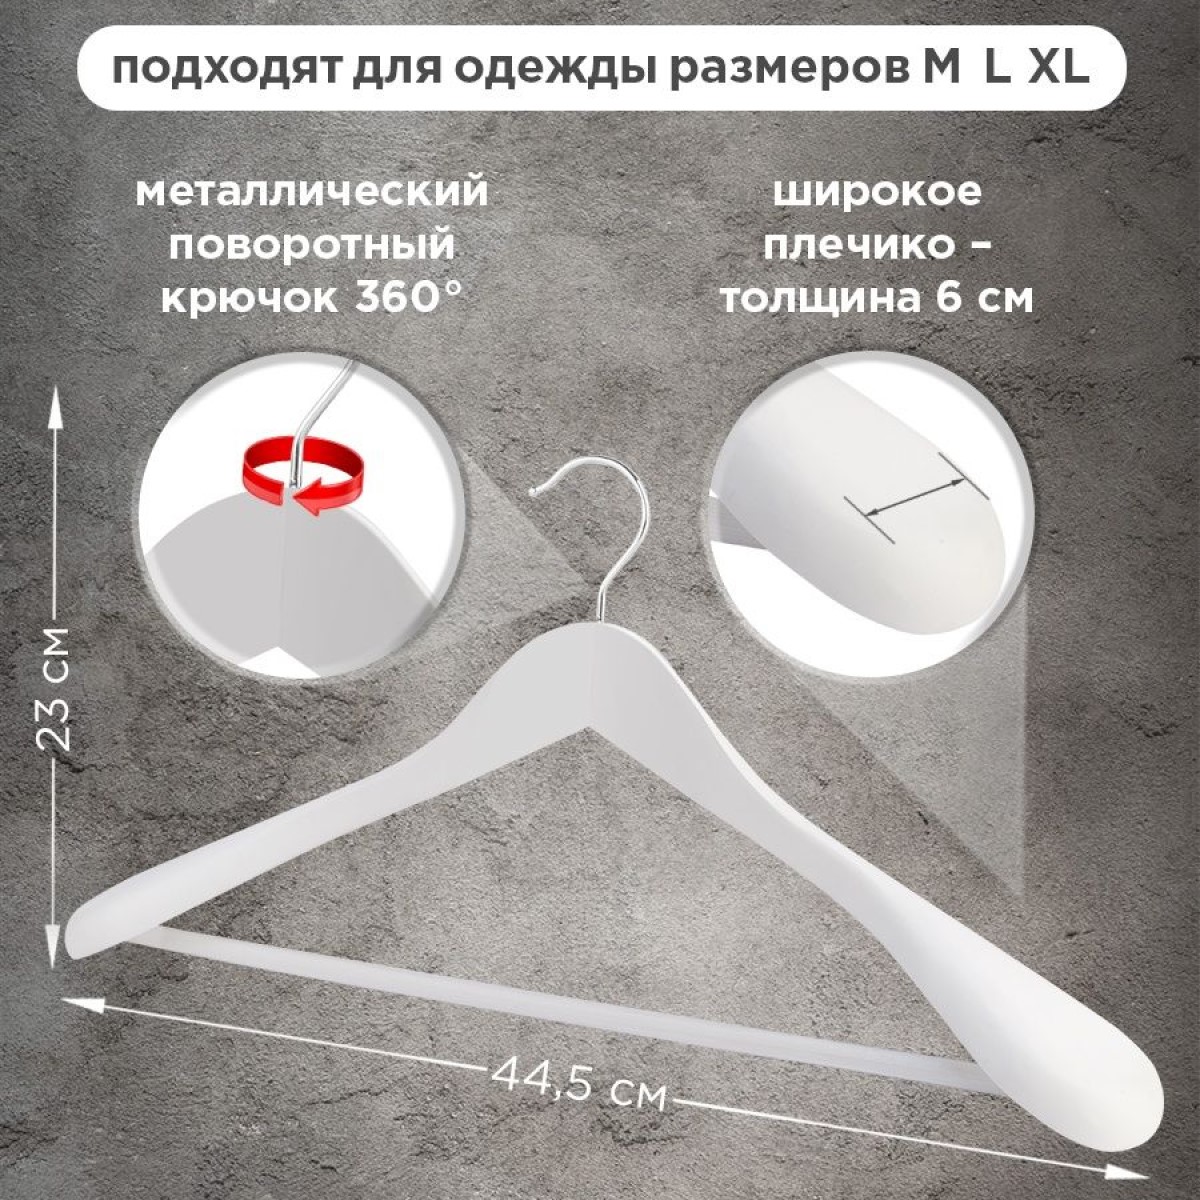  вешалок для верхней одежды (2 шт, сосна, белая)  в интернет .